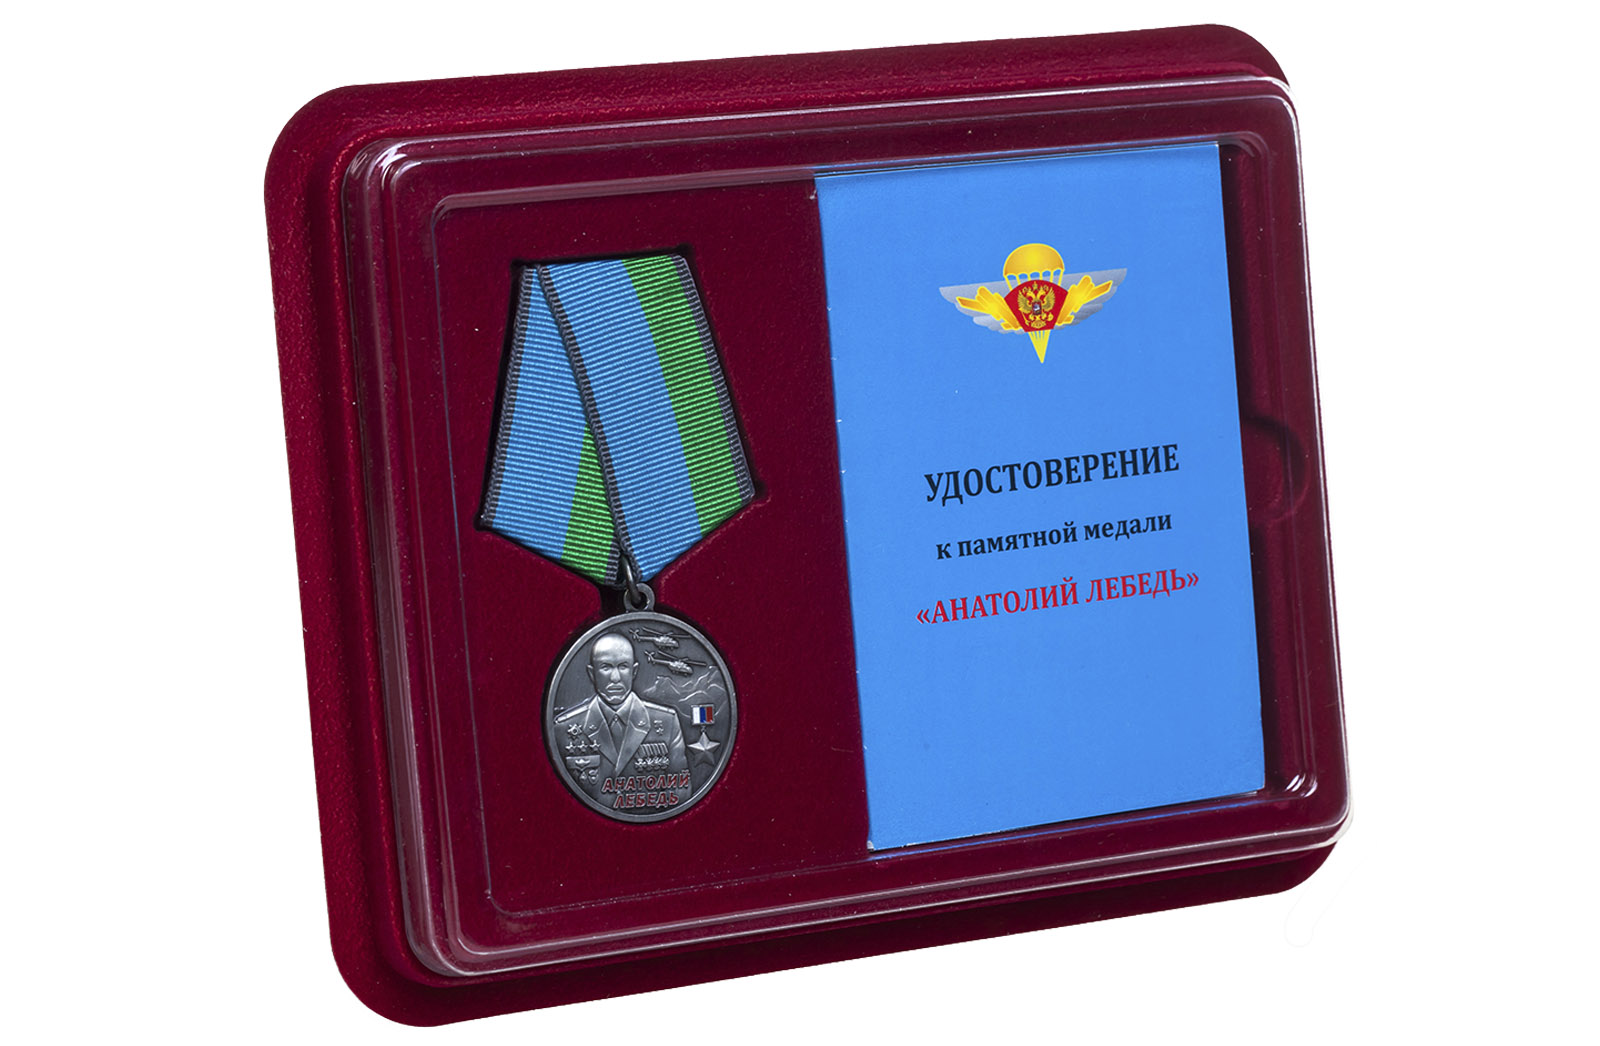 Медаль ВДВ "Анатолий Лебедь" в футляре с удостоверением 